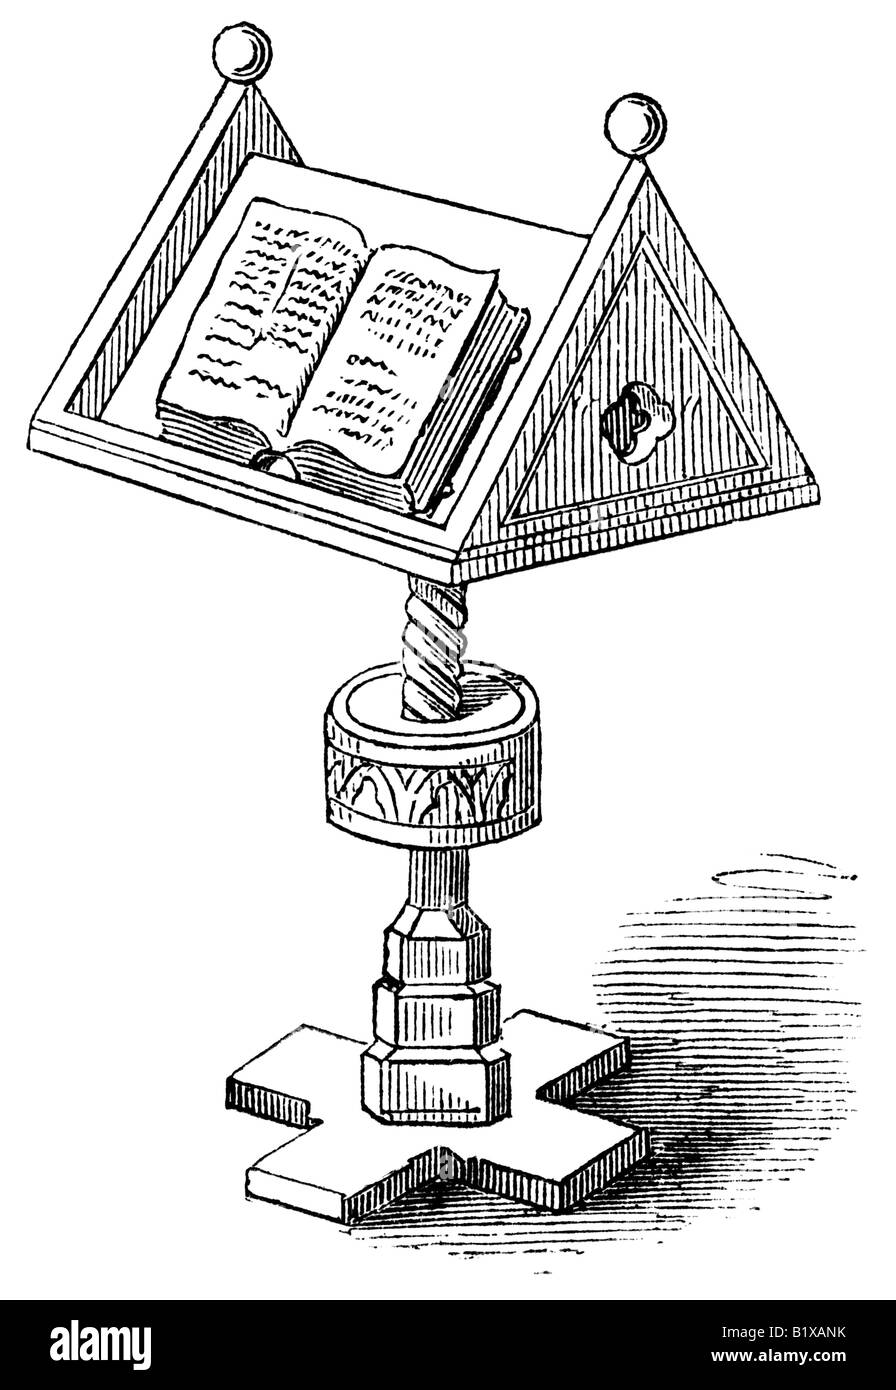 Immagini Stock - Il Libro È Illuminato Da Luce Da Una Lampada Su Un Tavolo  In Una Stanza Buia. Image 57295172